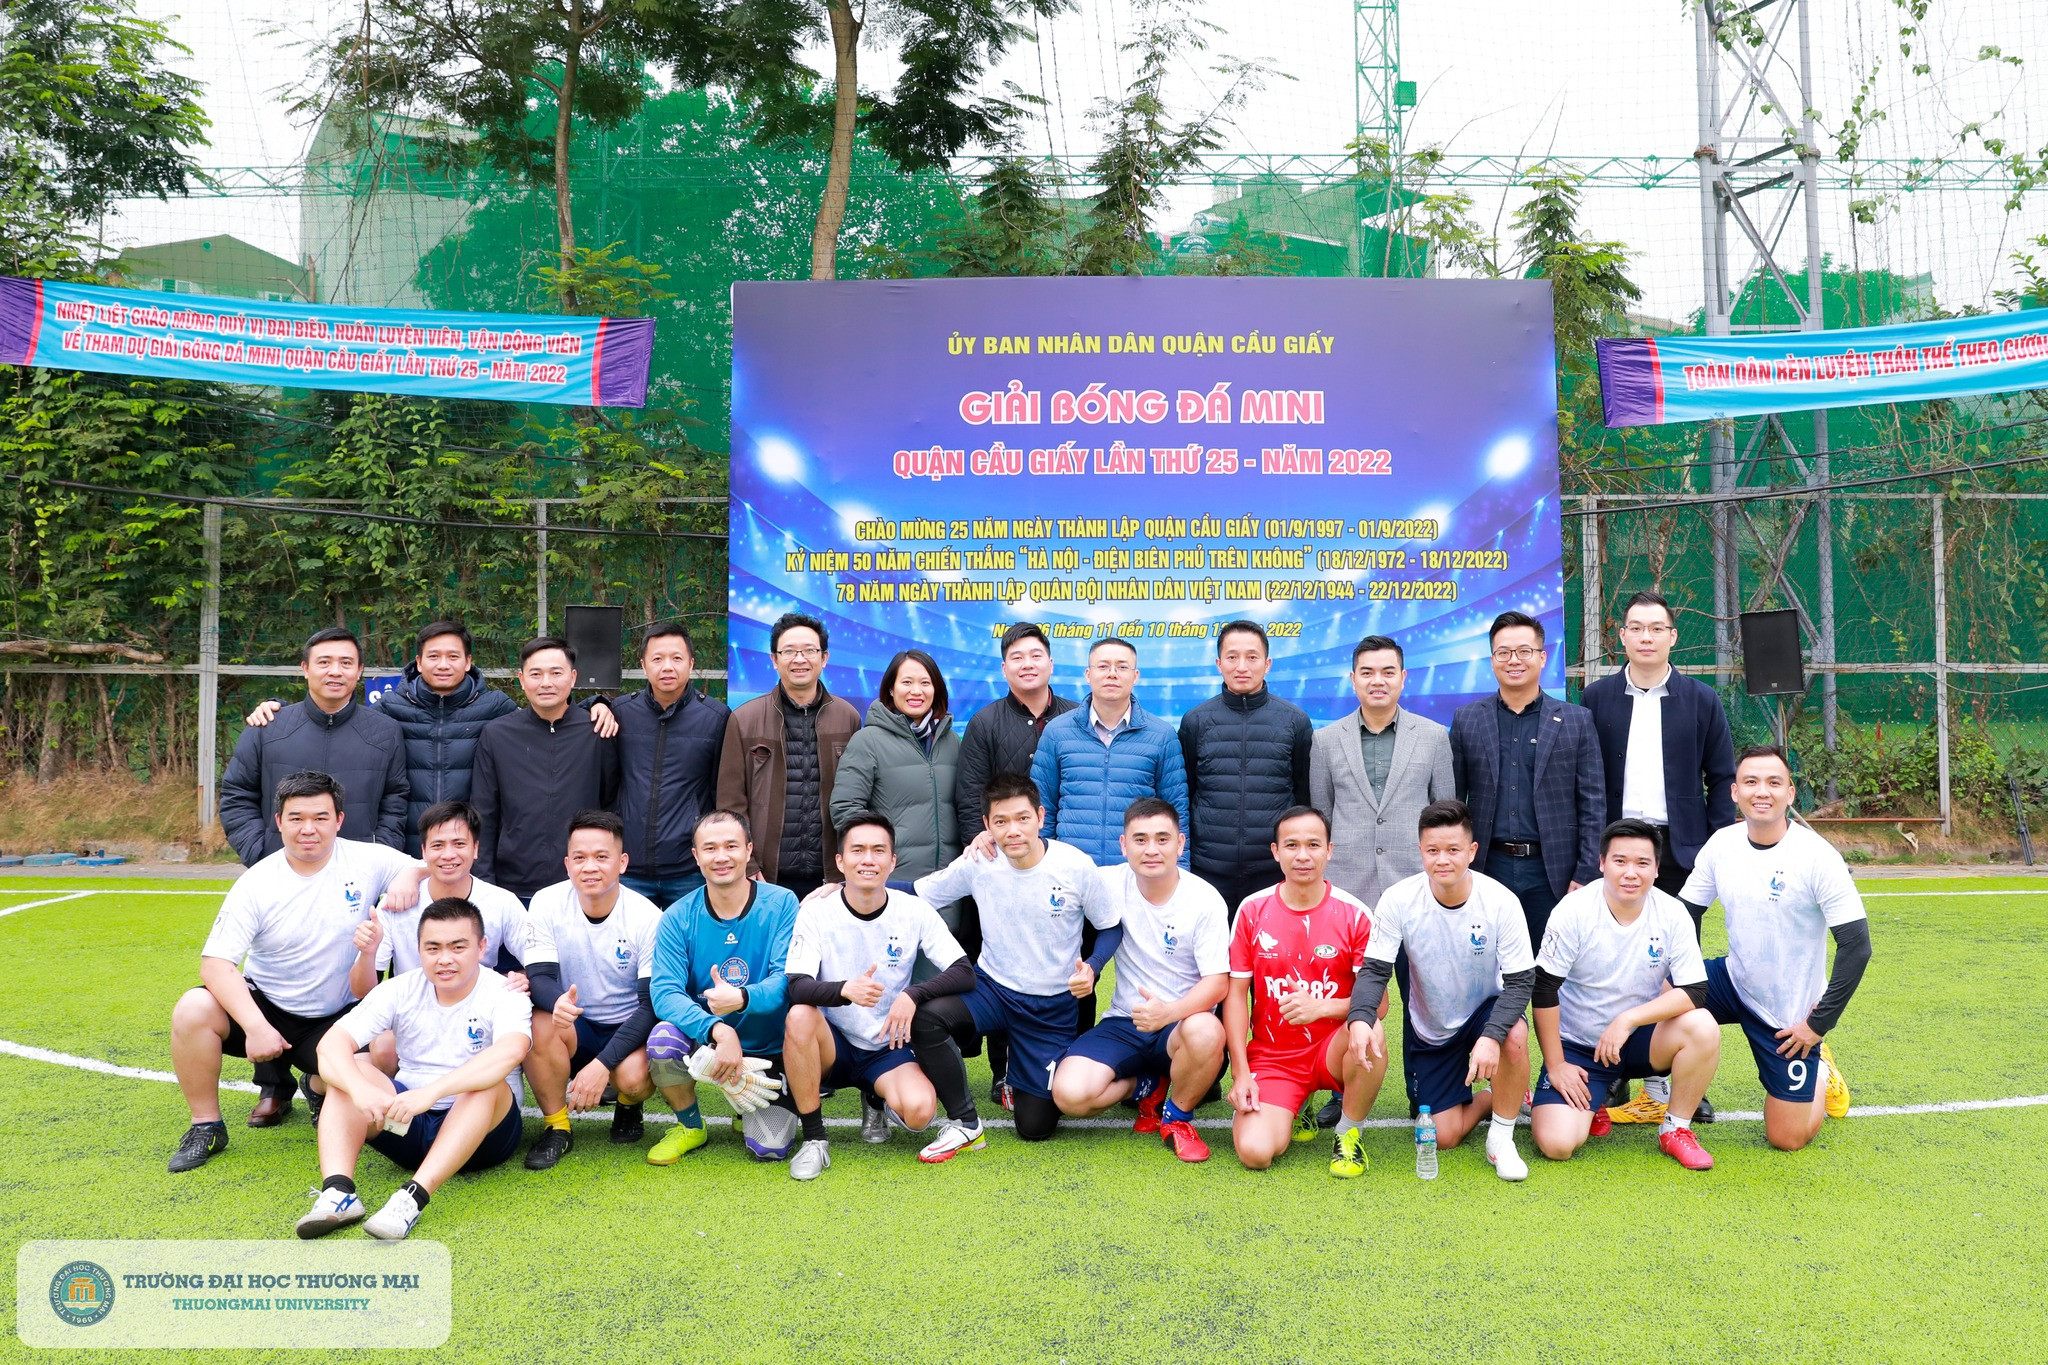 Bế mạc Giải Bóng đá mini quận Cầu Giấy lần thứ 25 năm 2022